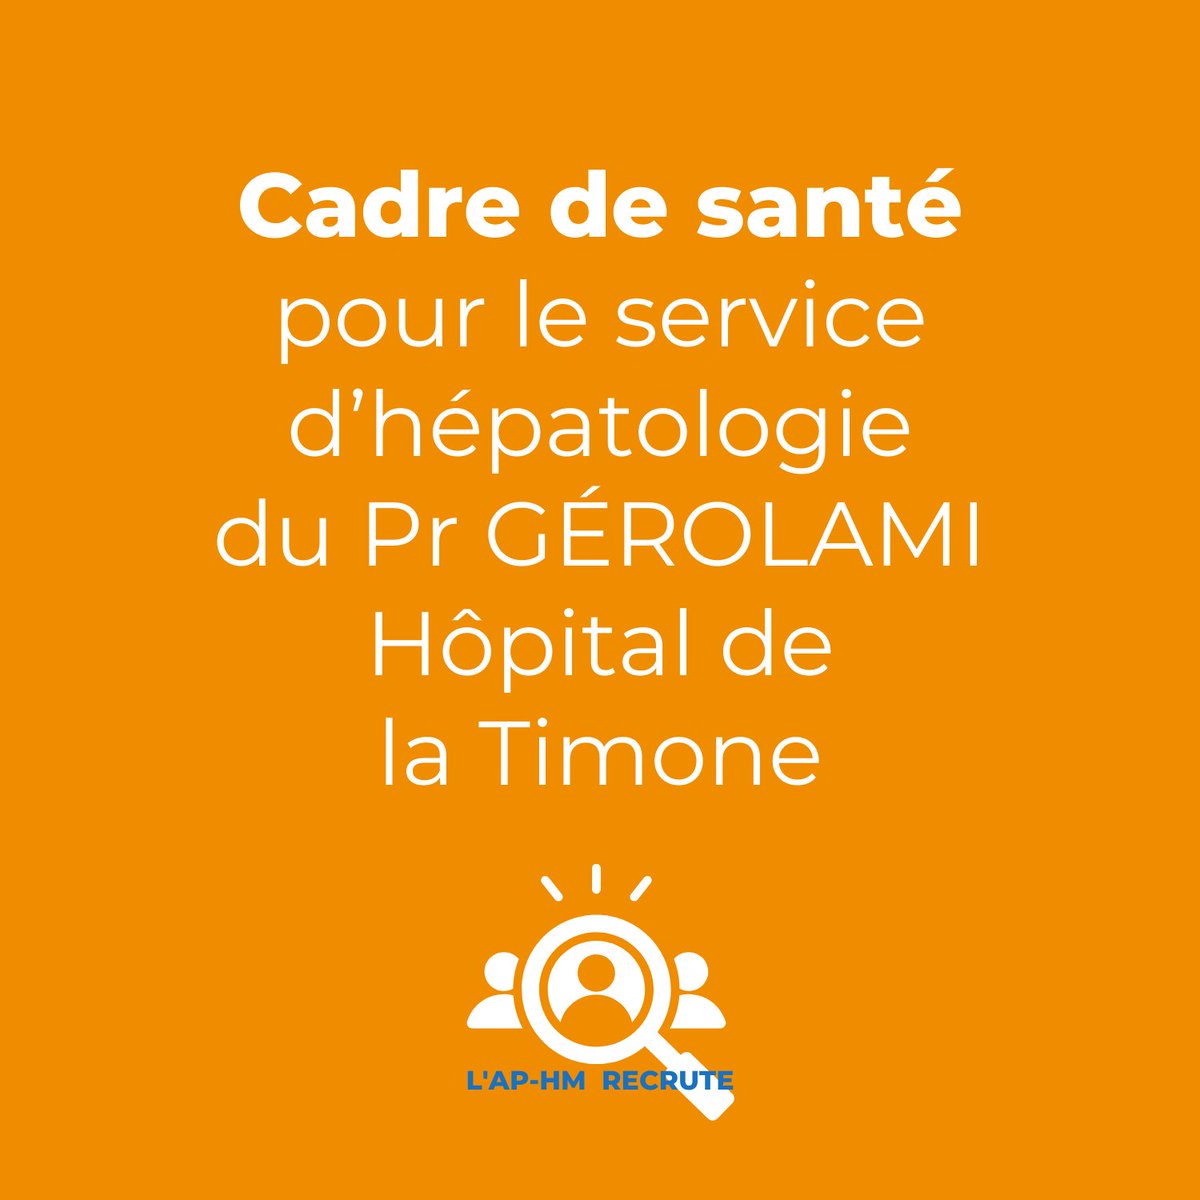 📢 #Recrutement! L'AP-HM recherche un(e) Cadre de santé pour le service d’HÉPATOLOGIE à l'Hôpital TIMONE. Vous serez intégré(e) à une équipe dédiée à l'hépatologie. 🏥 #EmploiMarseille